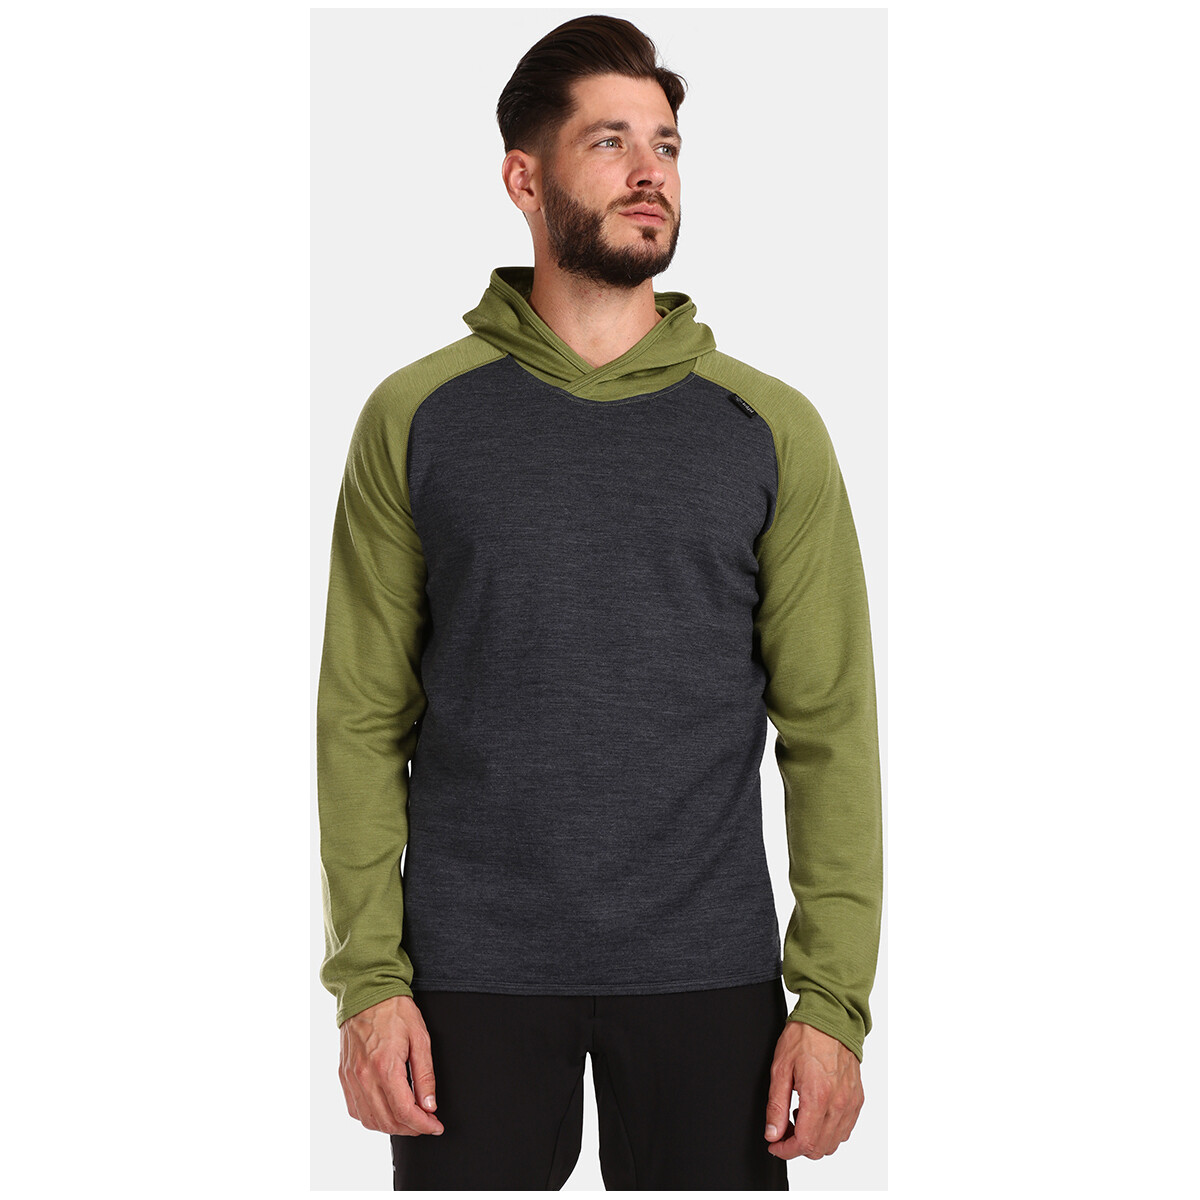 Textil Svetry Kilpi Pánský svetr s merino vlny  MOSEO-M Zelená